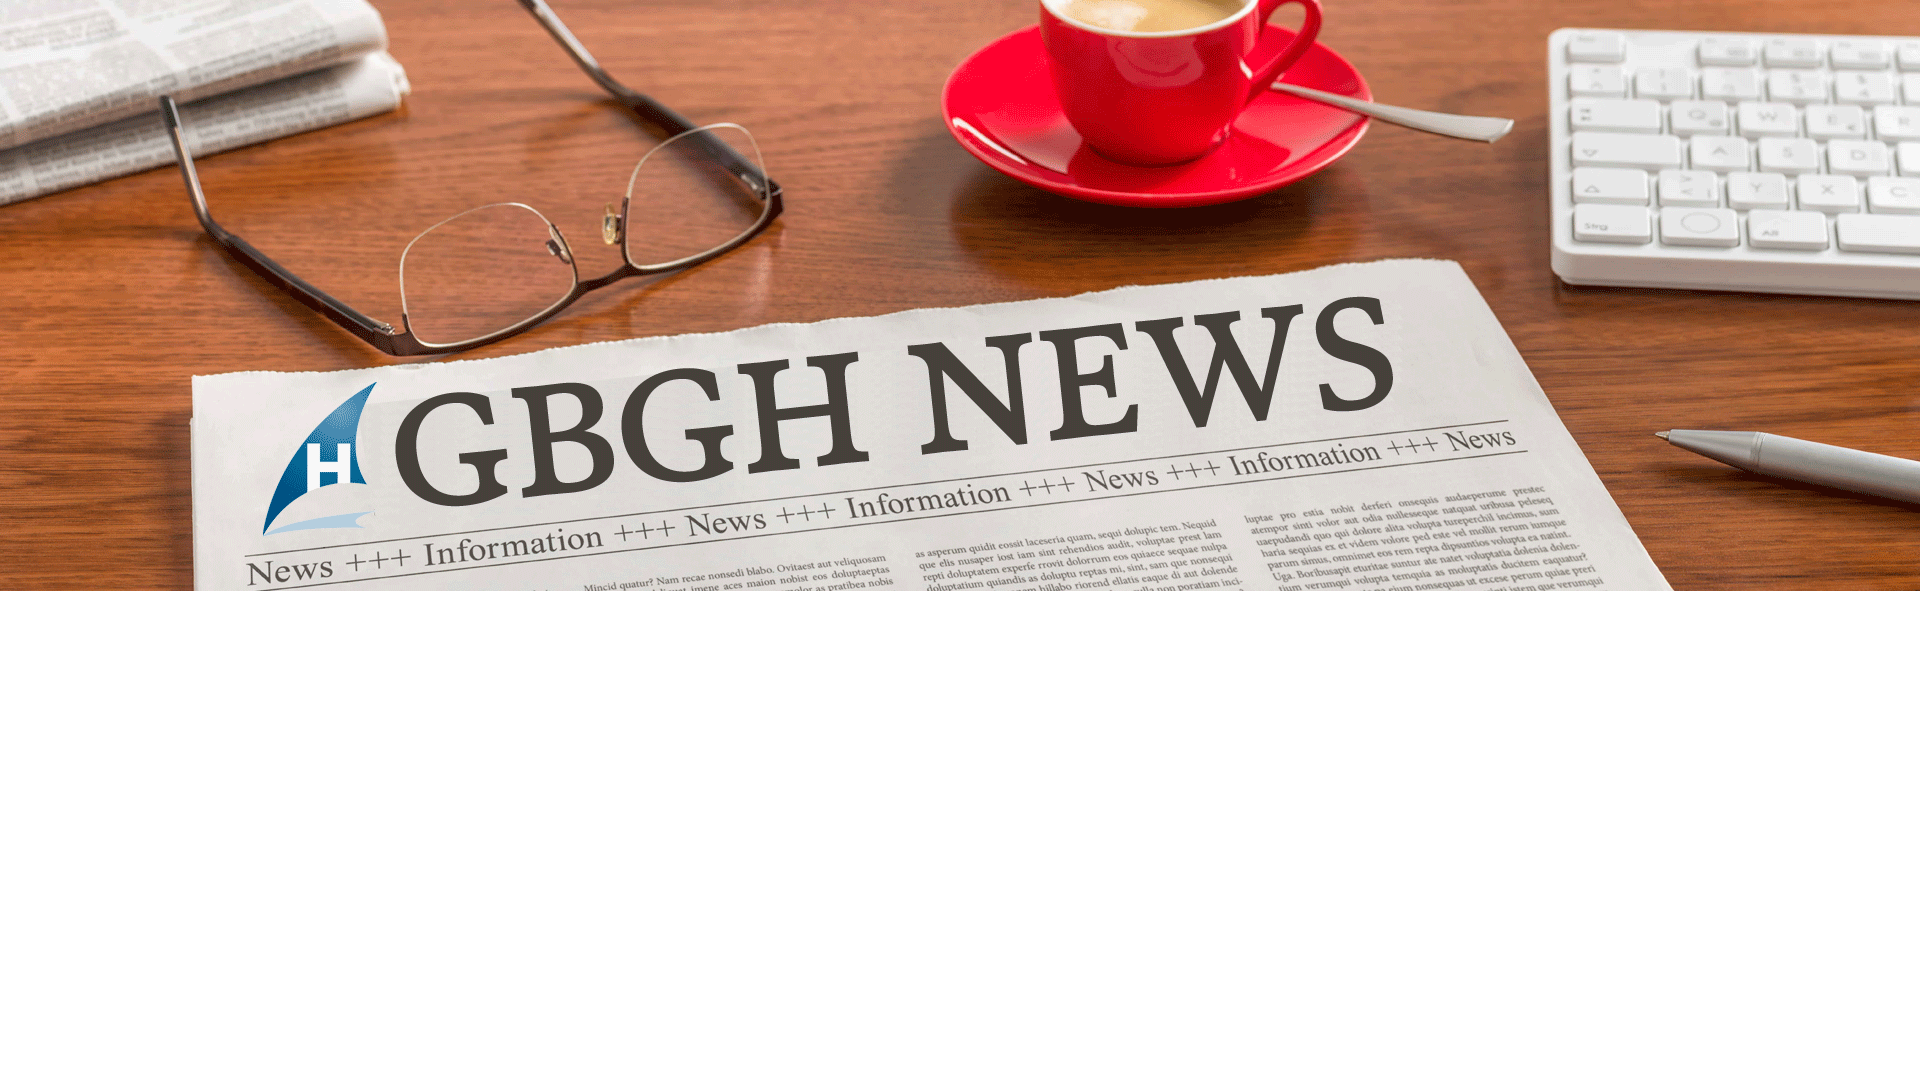 GBGH News